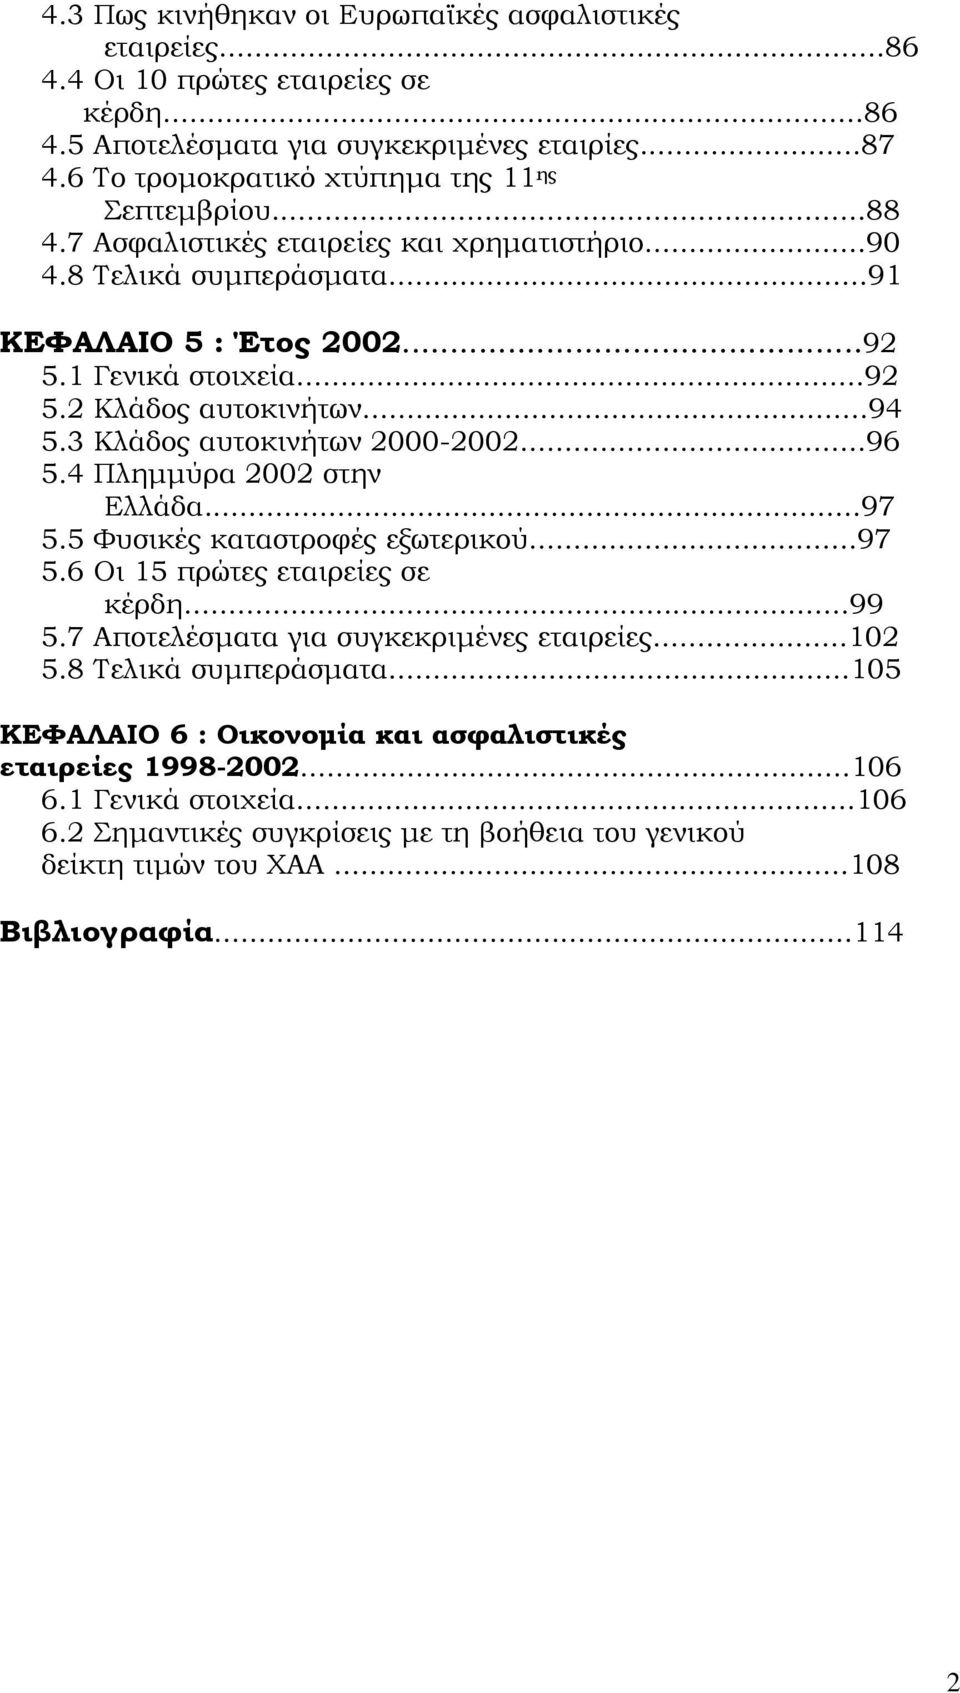 ..94 5.3 Κλάδος αυτοκινήτων 2000-2002...96 5.4 Πλημμύρα 2002 στην Ελλάδα...97 5.5 Φυσικές καταστροφές εξωτερικού...97 5.6 Οι 15 πρώτες εταιρείες σε κέρδη...99 5.